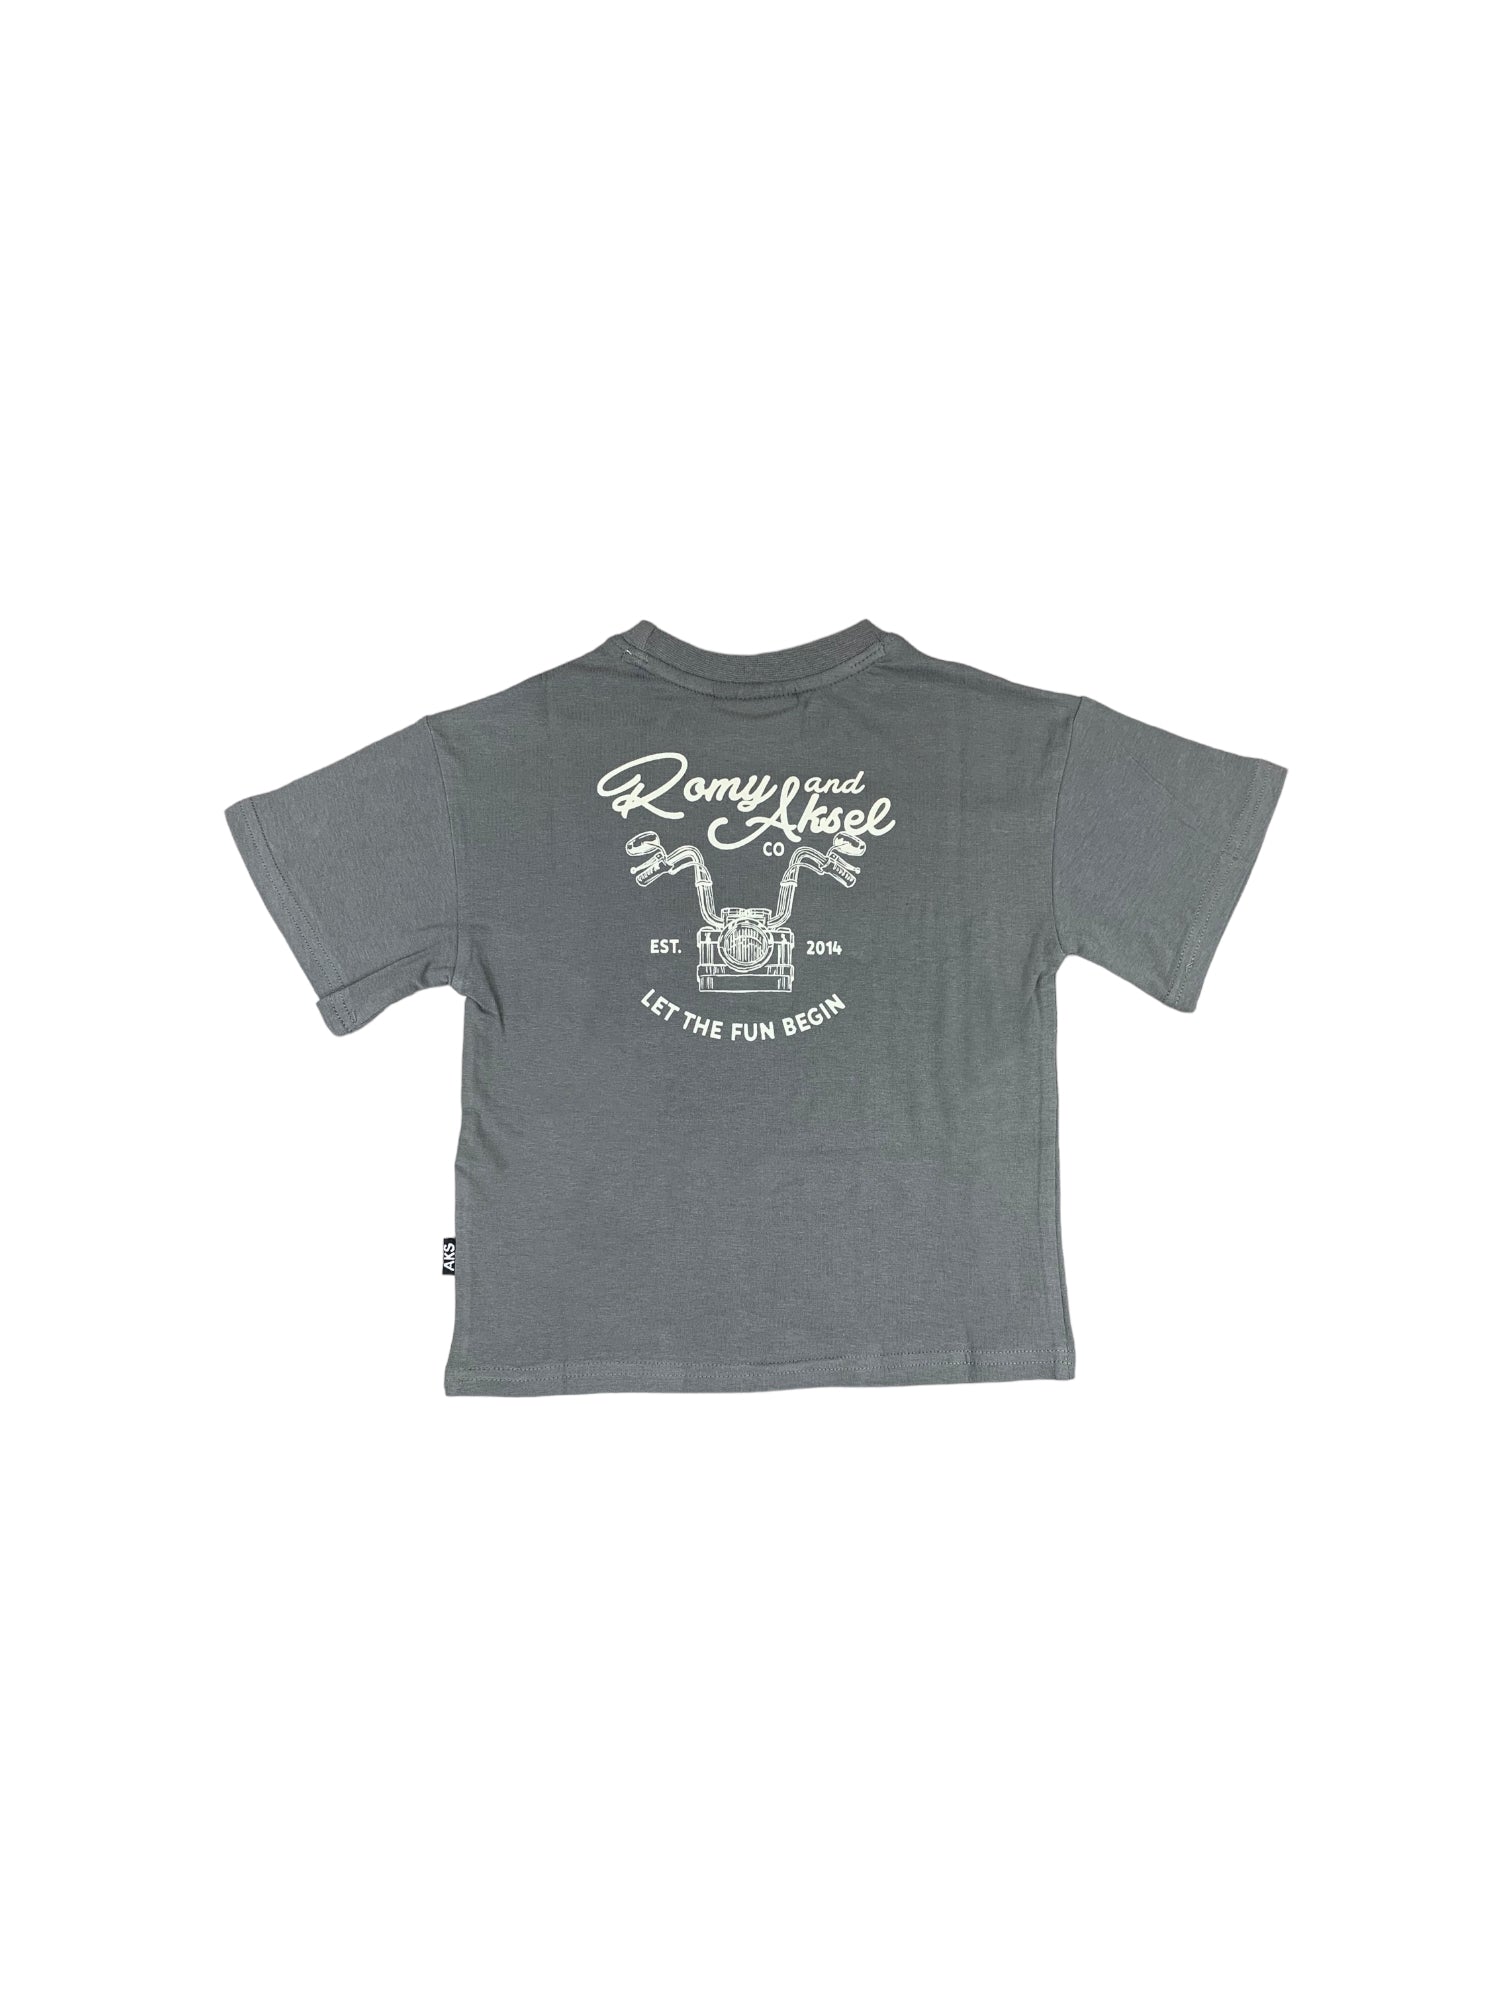 T-shirt de couleur gris-vert de Romy&Aksel. Imprimé de moto.